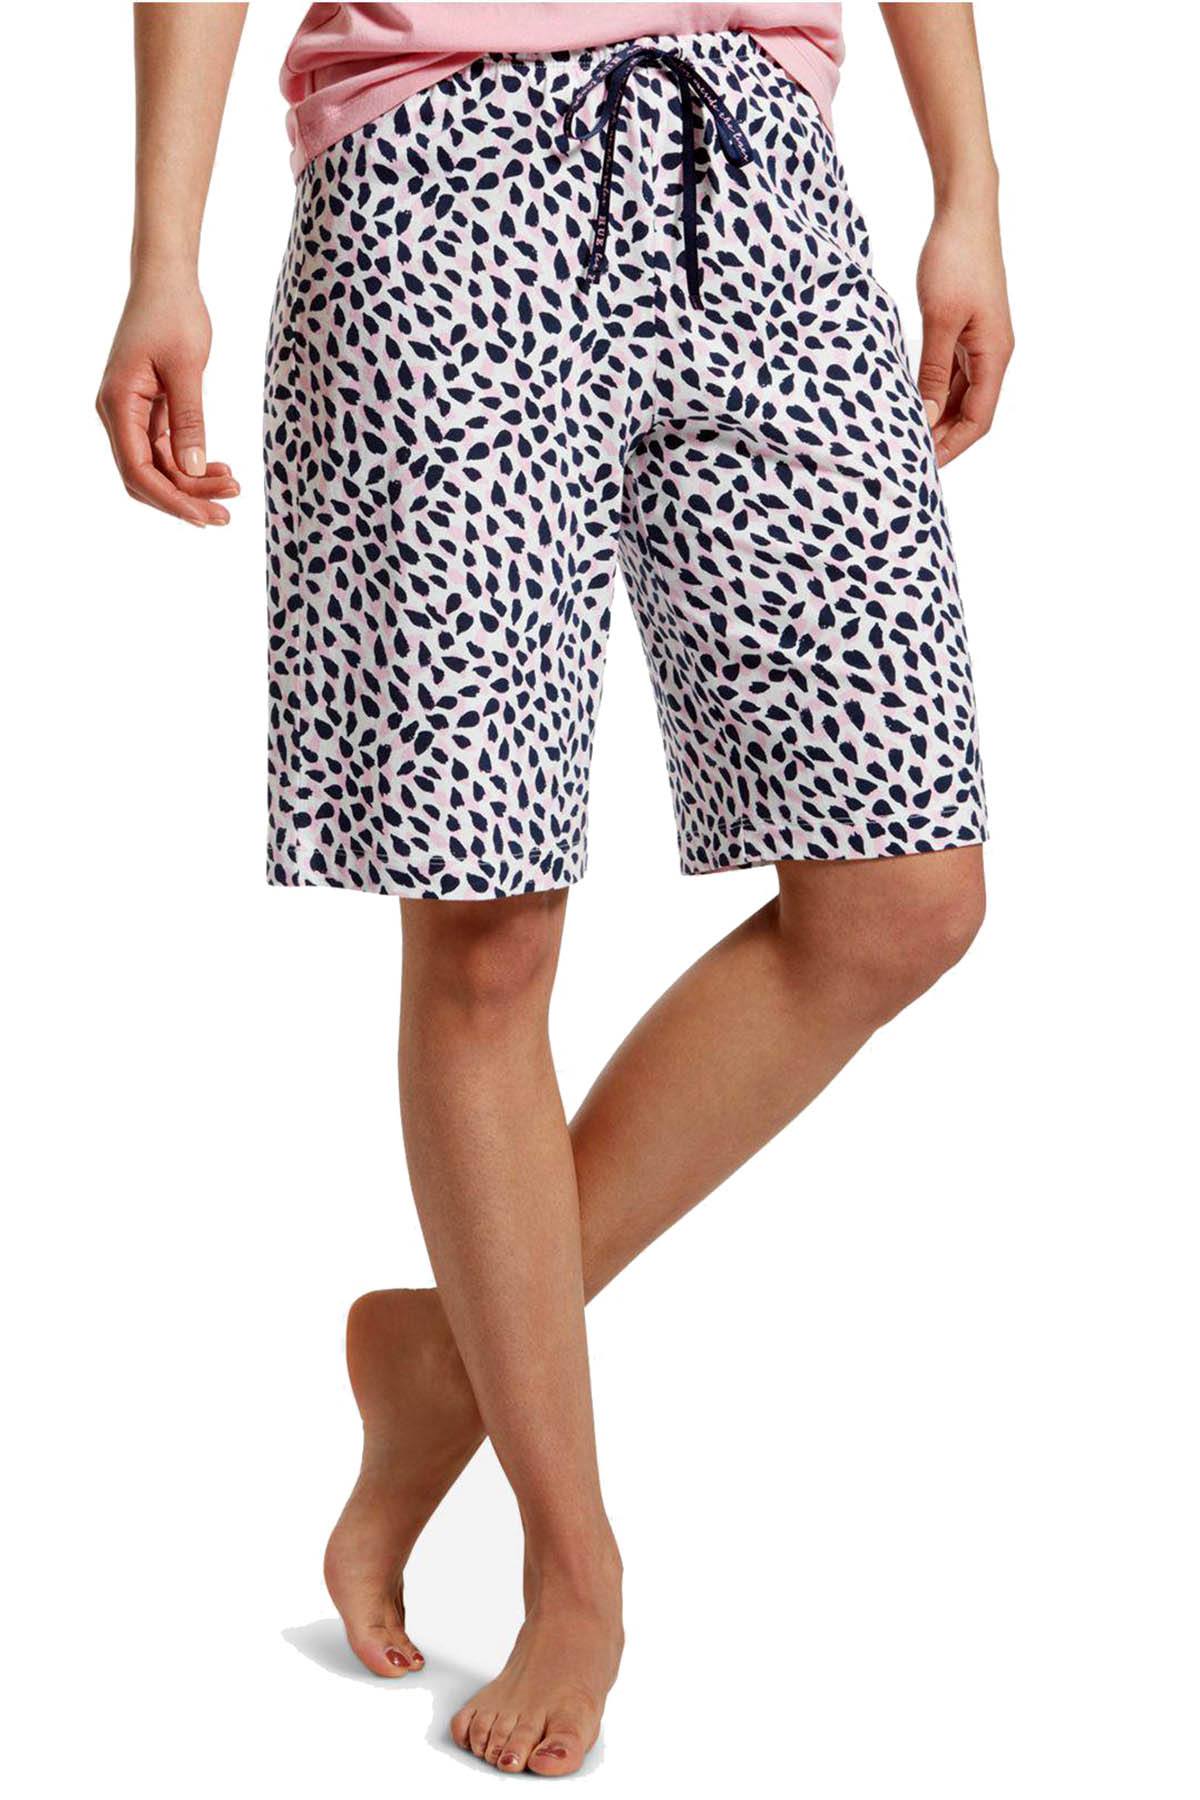 HUE PLUS Snow-White Spotted Bermuda Pajama Short